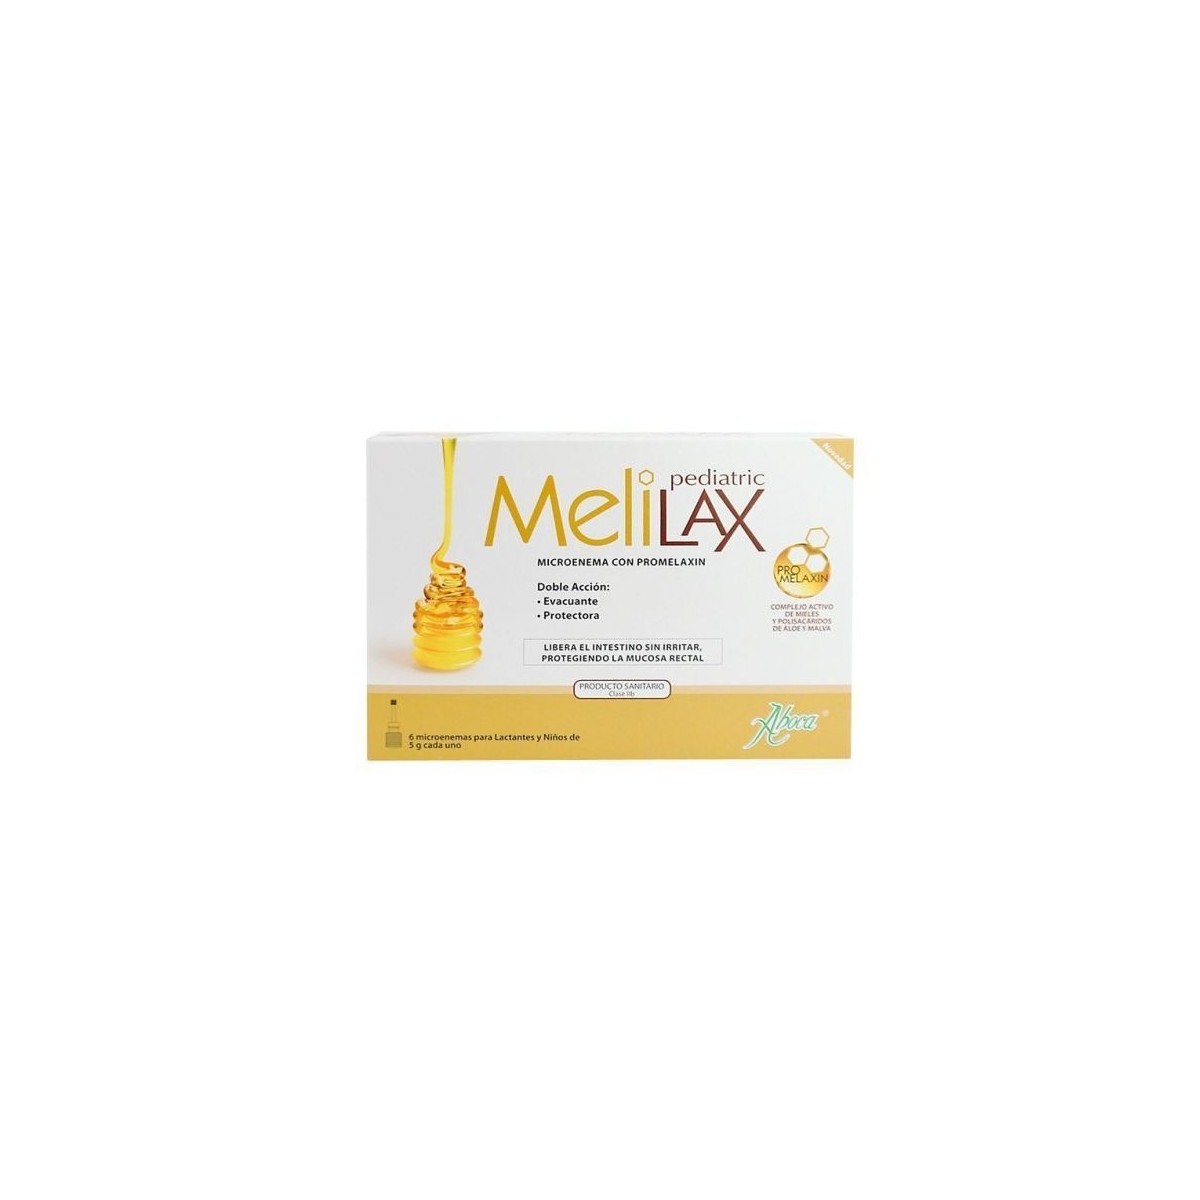 melilax-pediatric-6-microen-5g